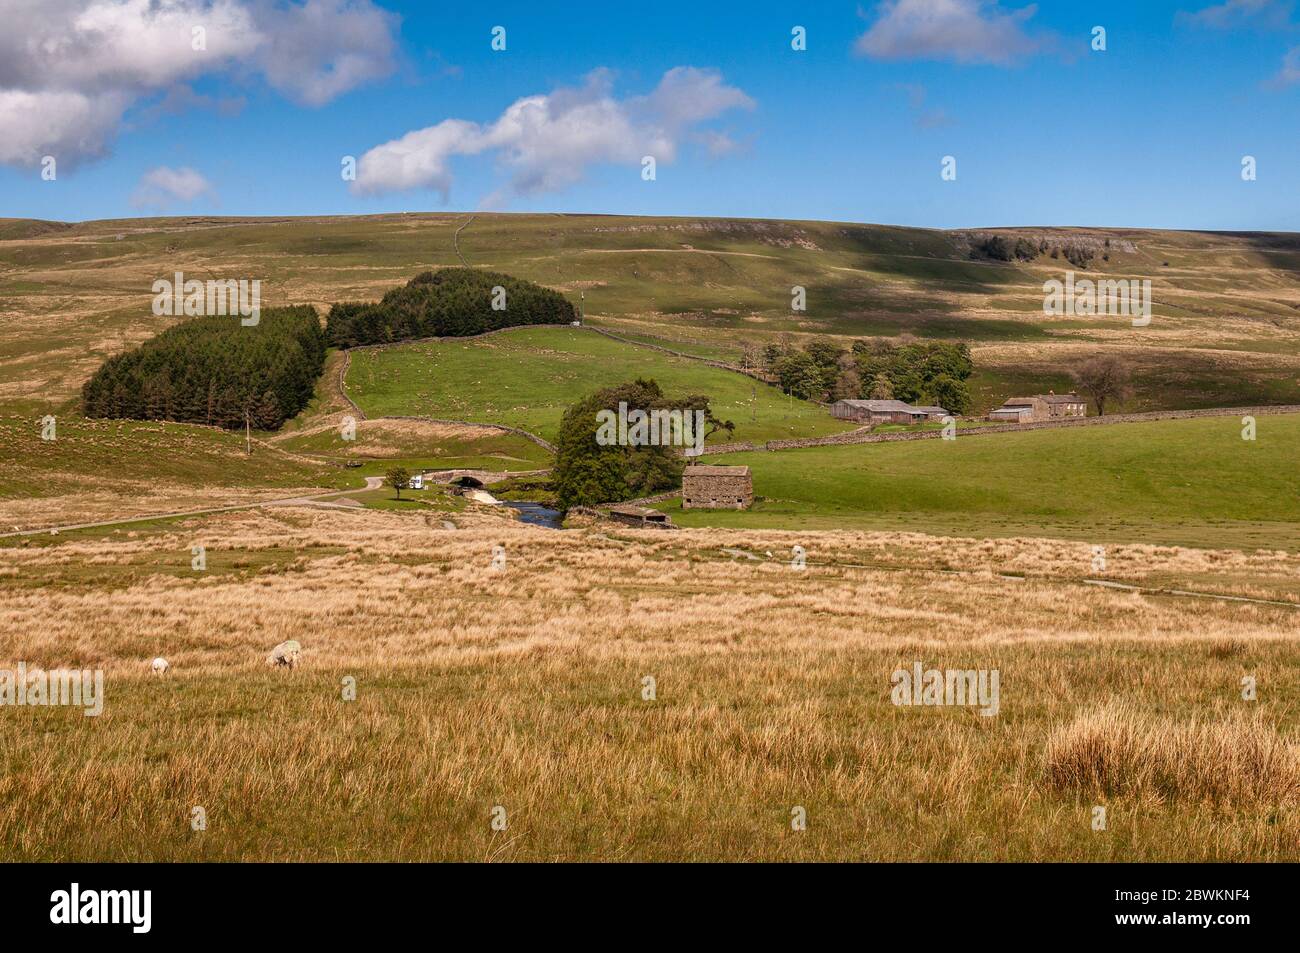 Fienili tradizionali si trovano su pascoli di pecora accanto al fiume Ure vicino alla testa della valle di Wensleydale sotto le colline delle valli dello Yorkshire. Foto Stock